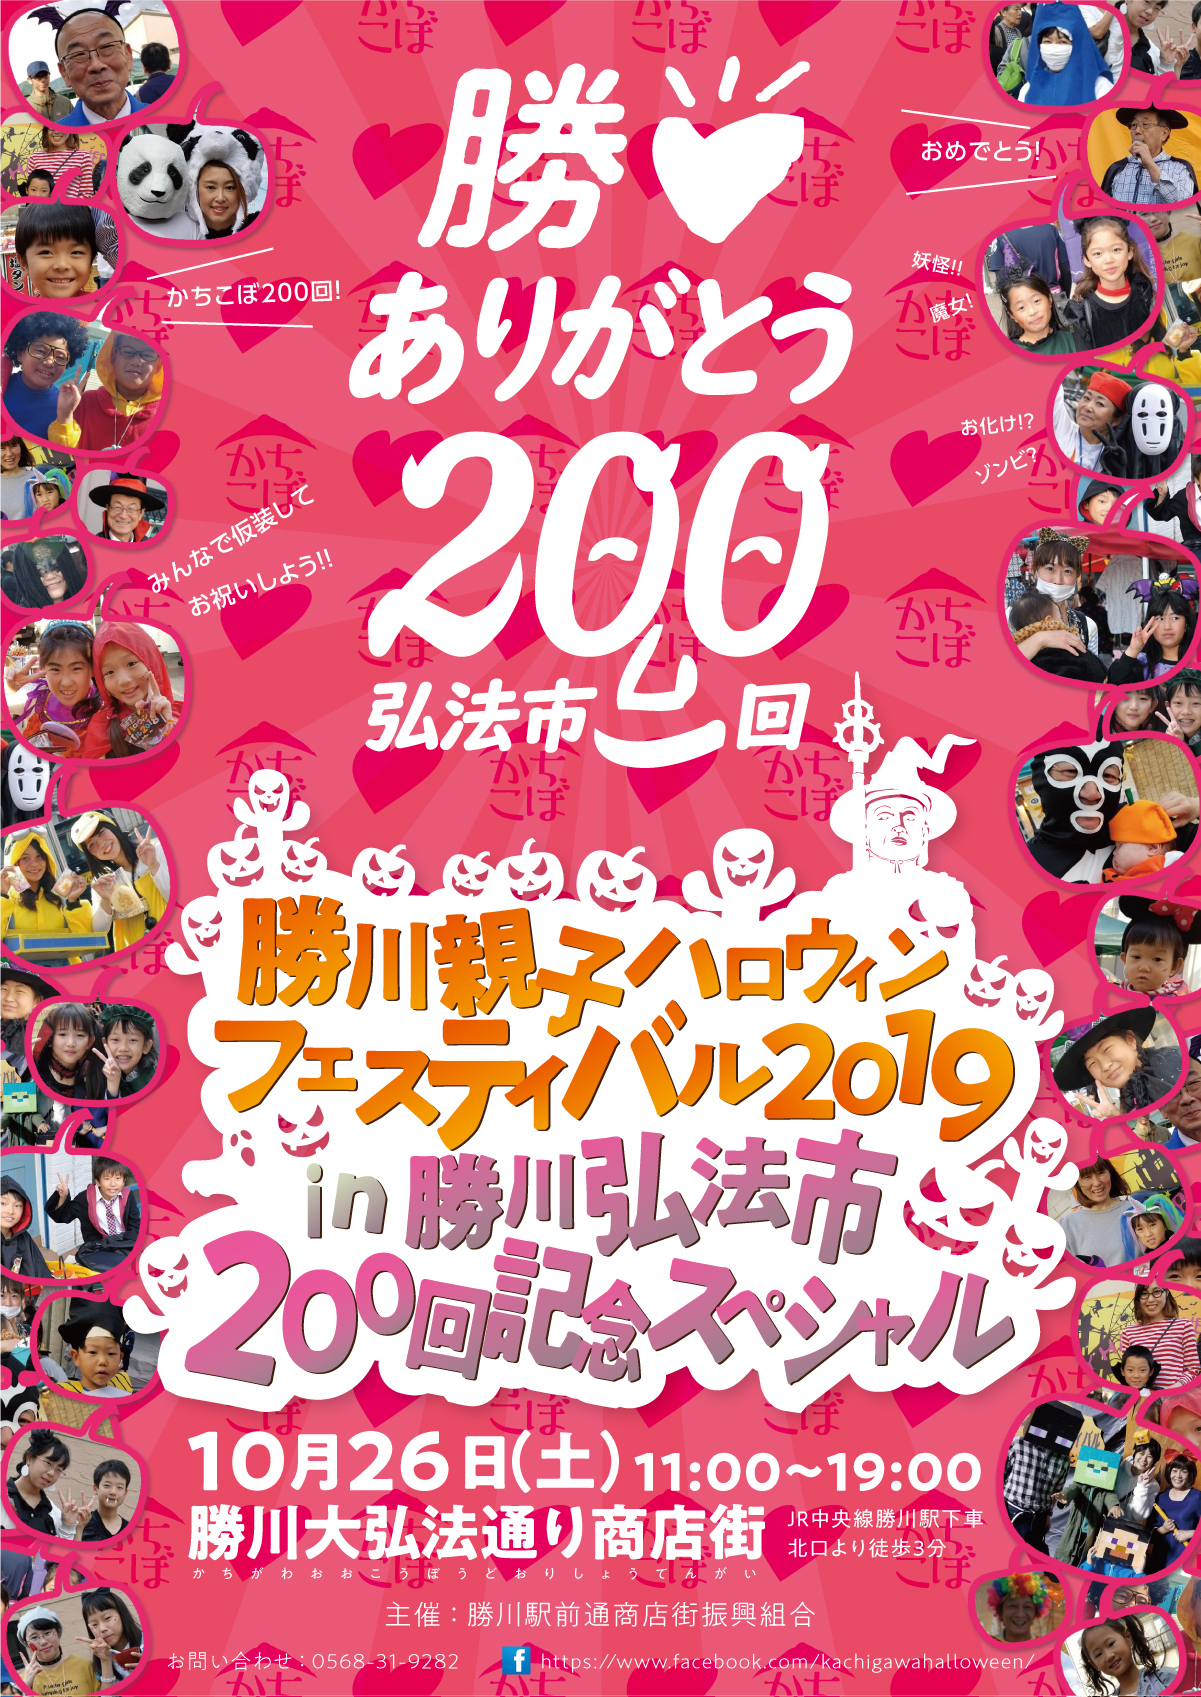 勝川親子ハロウィンフェスティバル2019in勝川弘法市200回記念スペシャル